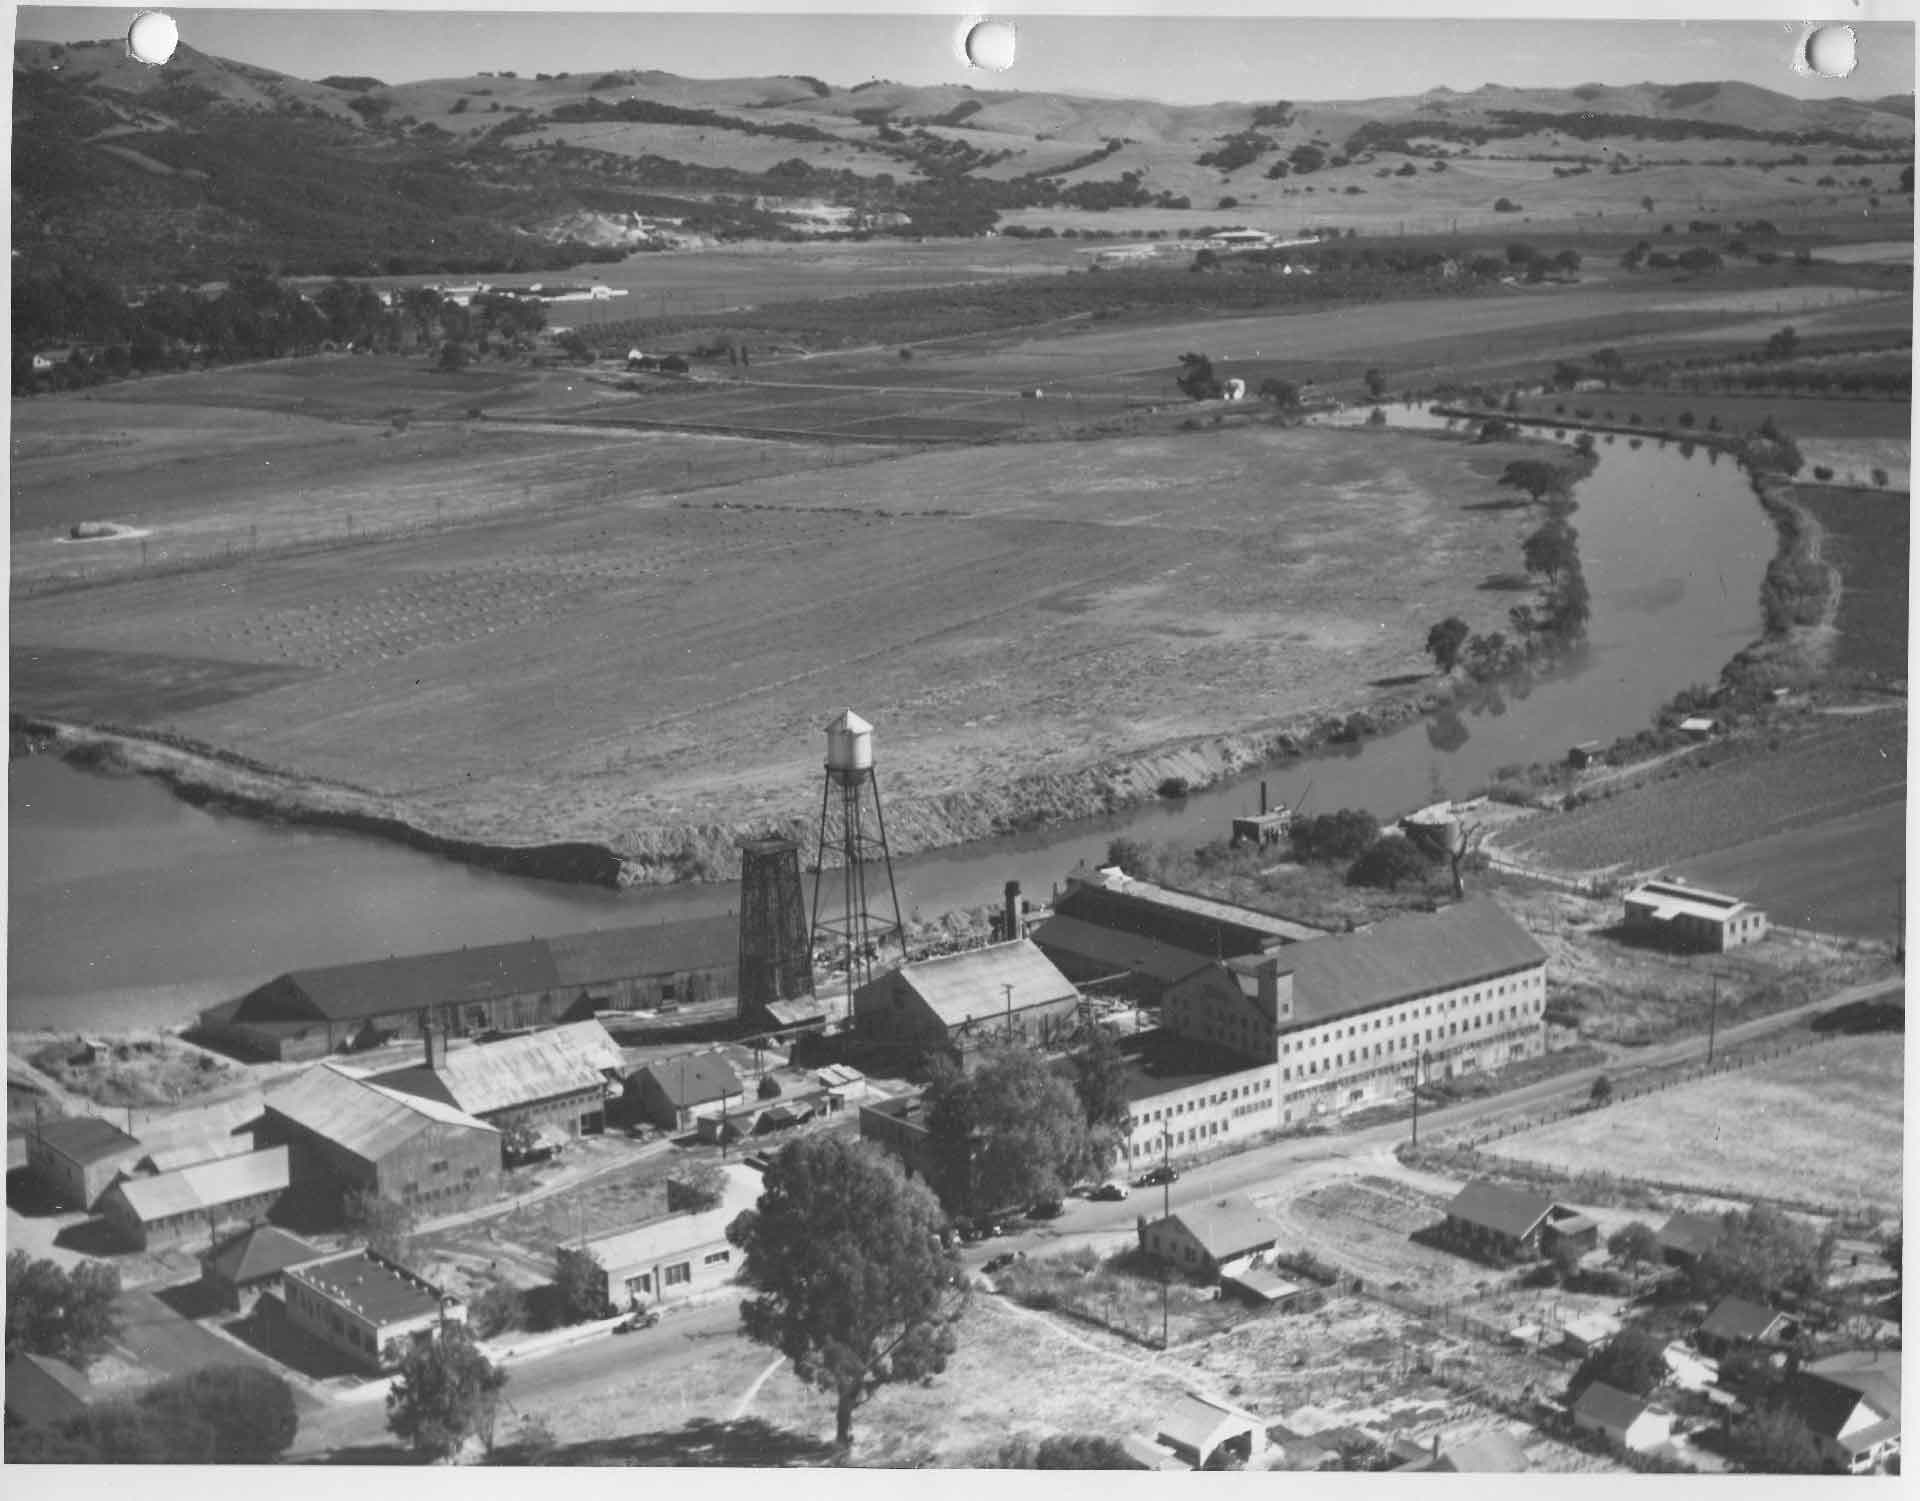 Nhà máy sản xuất da Nappa ở thành phố Napa, California, Mỹ khi xưa